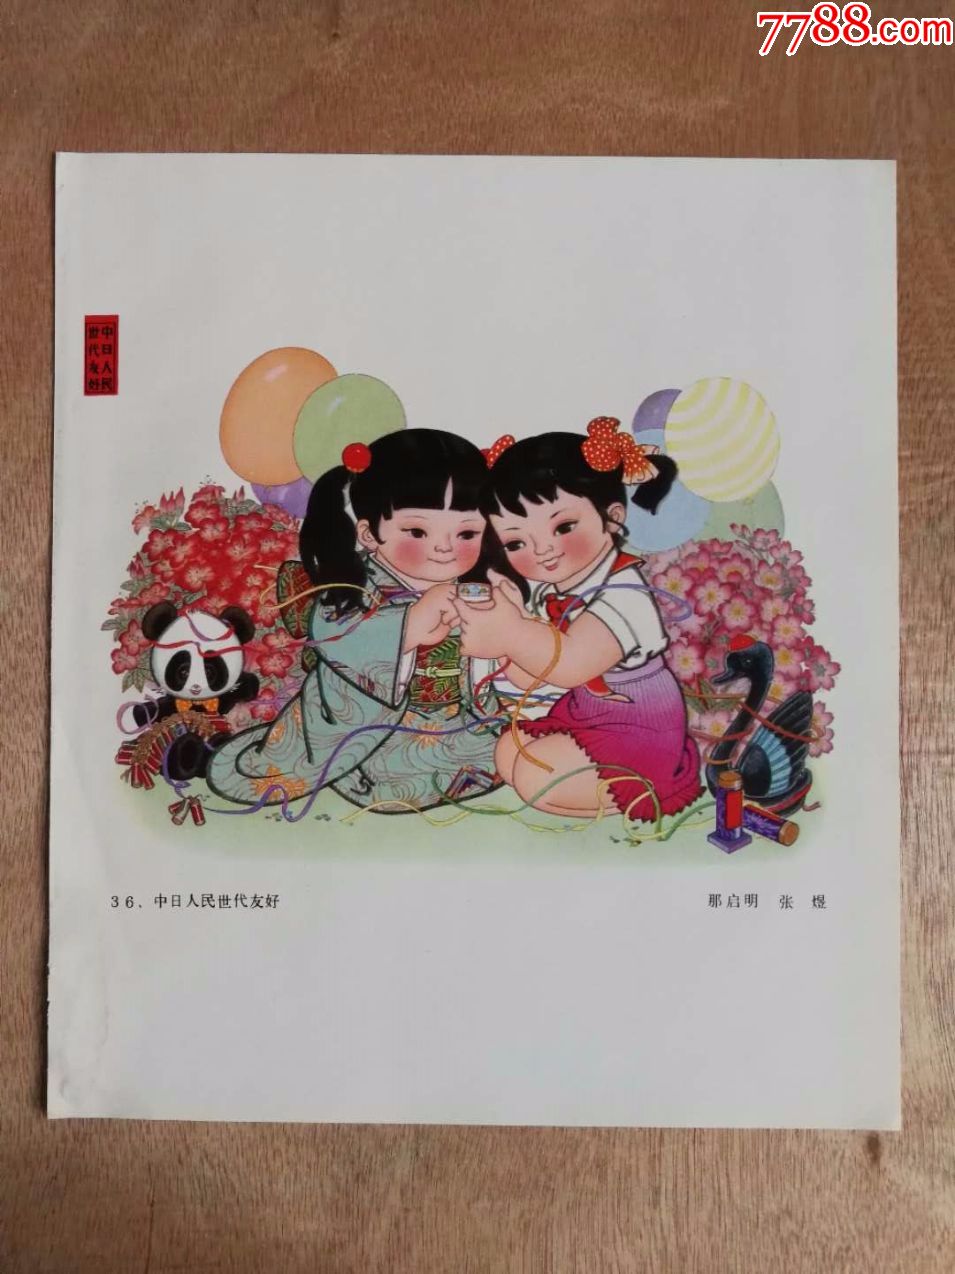 中日人民世代友好-价格:10.0000元-au19440881-年画